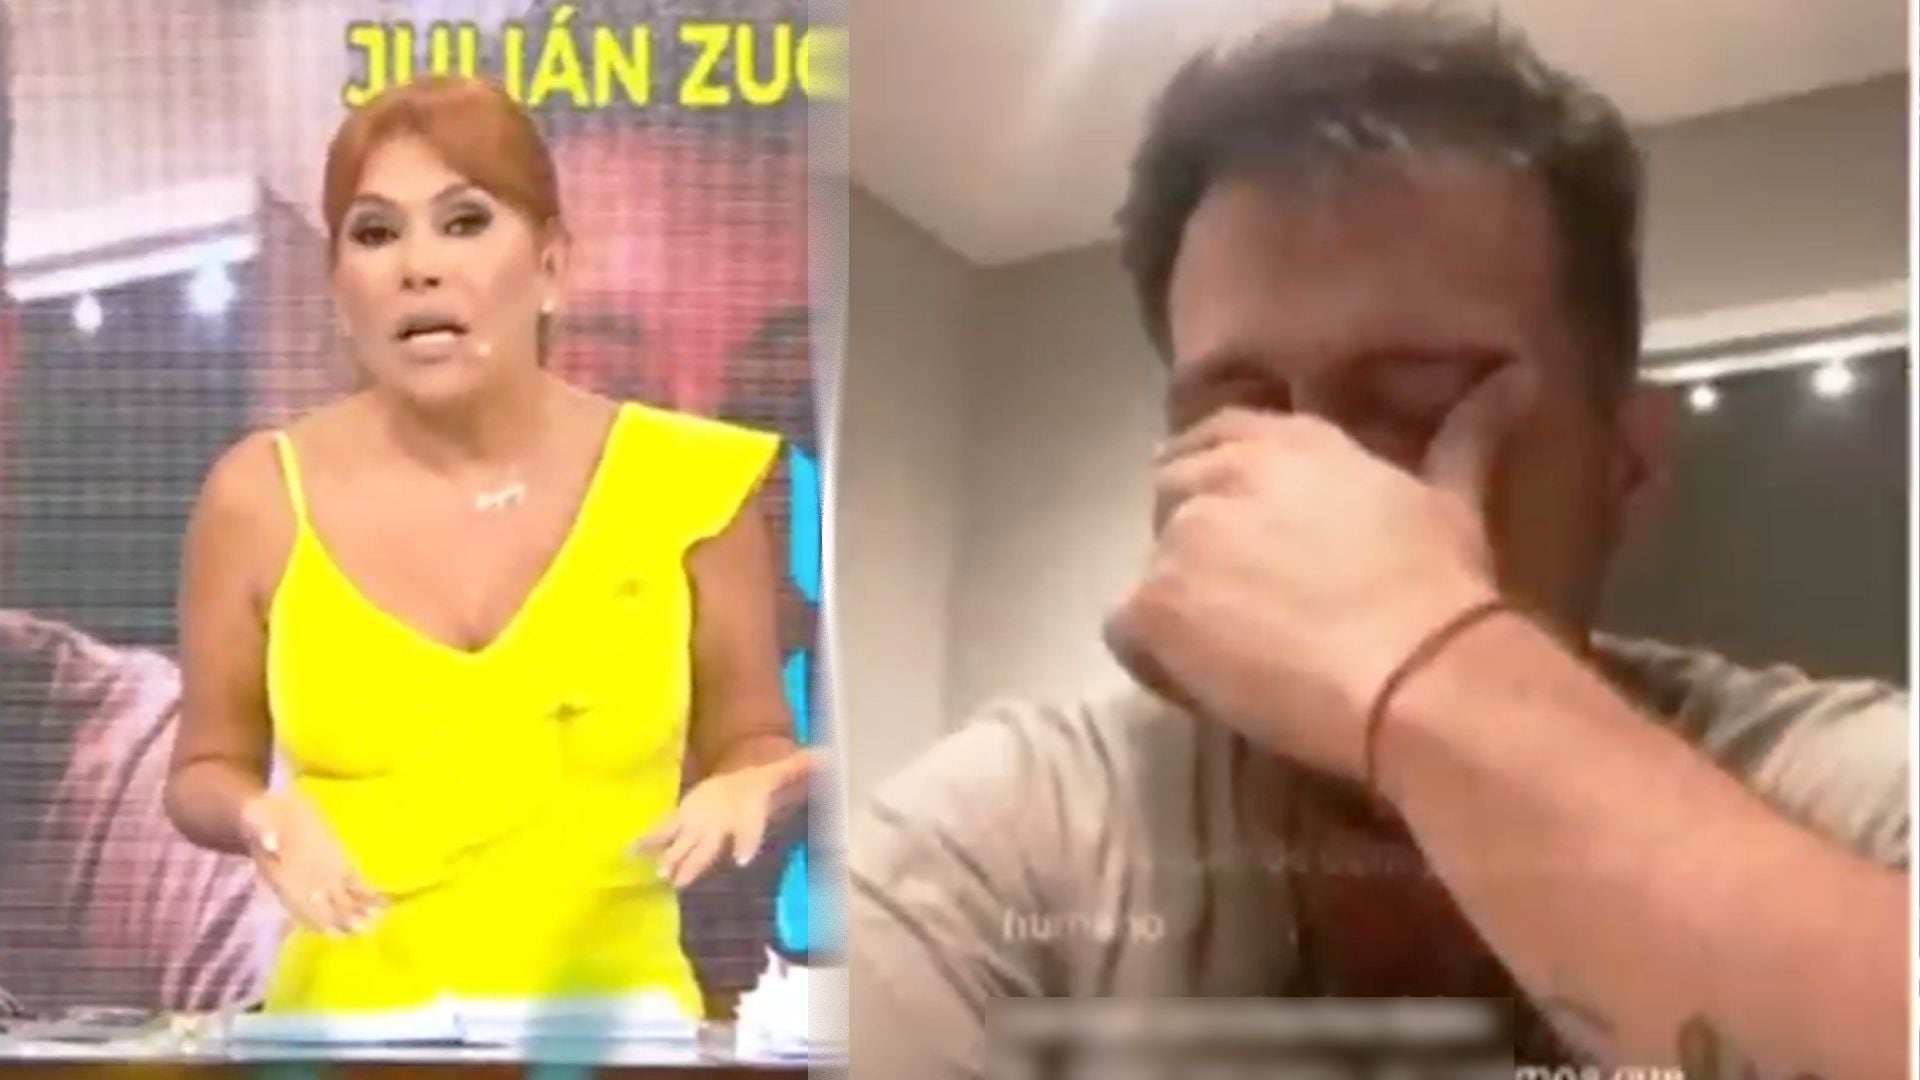 Magaly Medina arremete contra Julián Zucchi por hacer live ebrio. (Captura: Magaly TV La Firme)